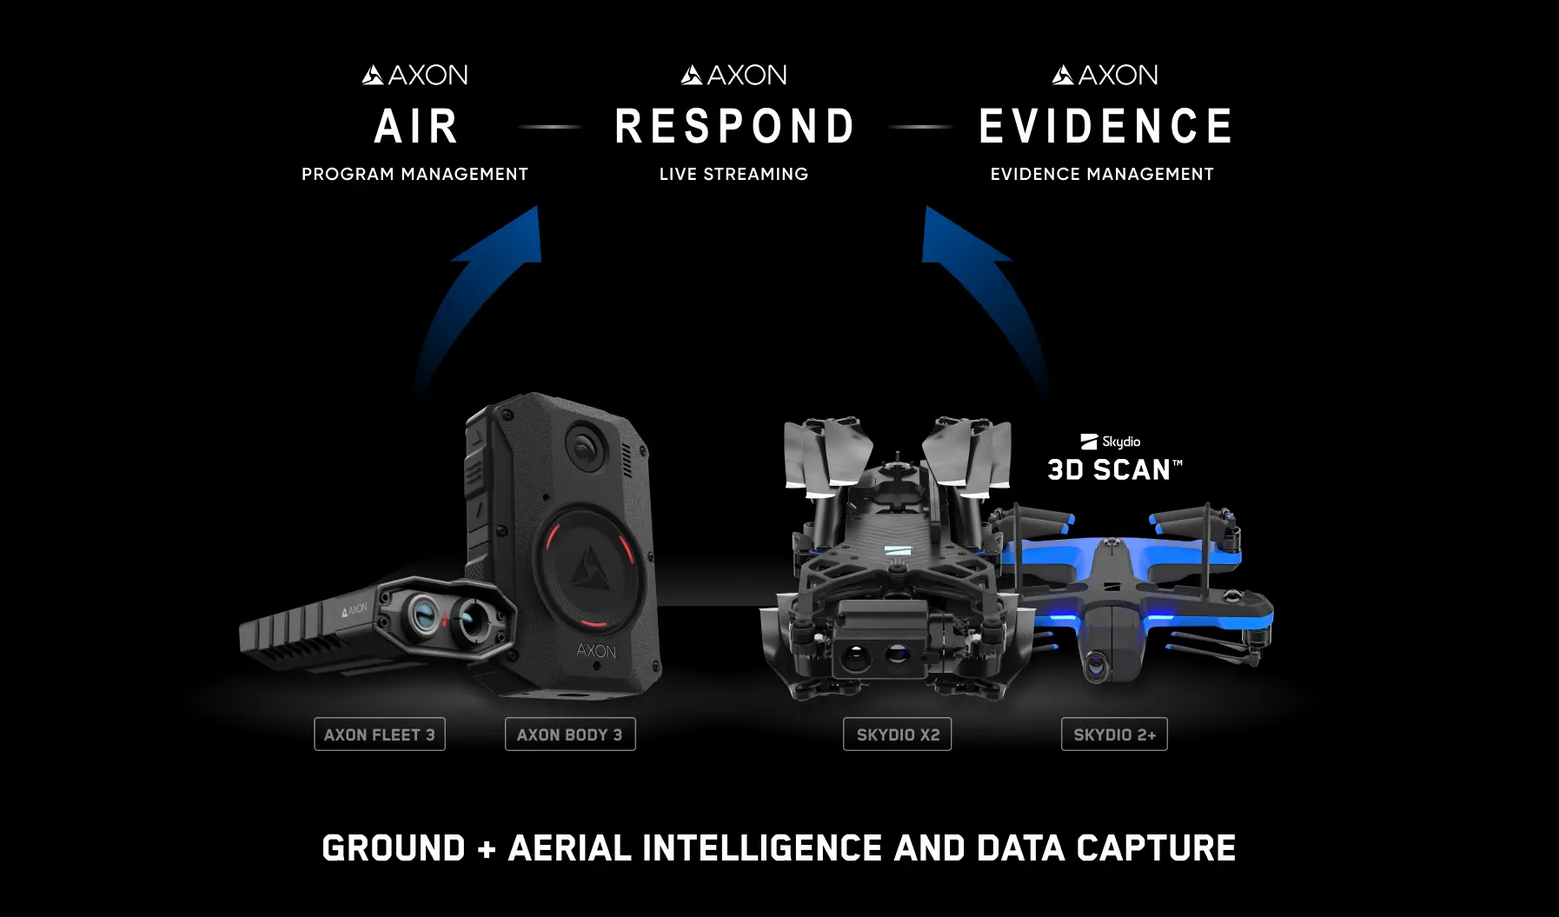 Skydio drones and Axon situational awareness platforms